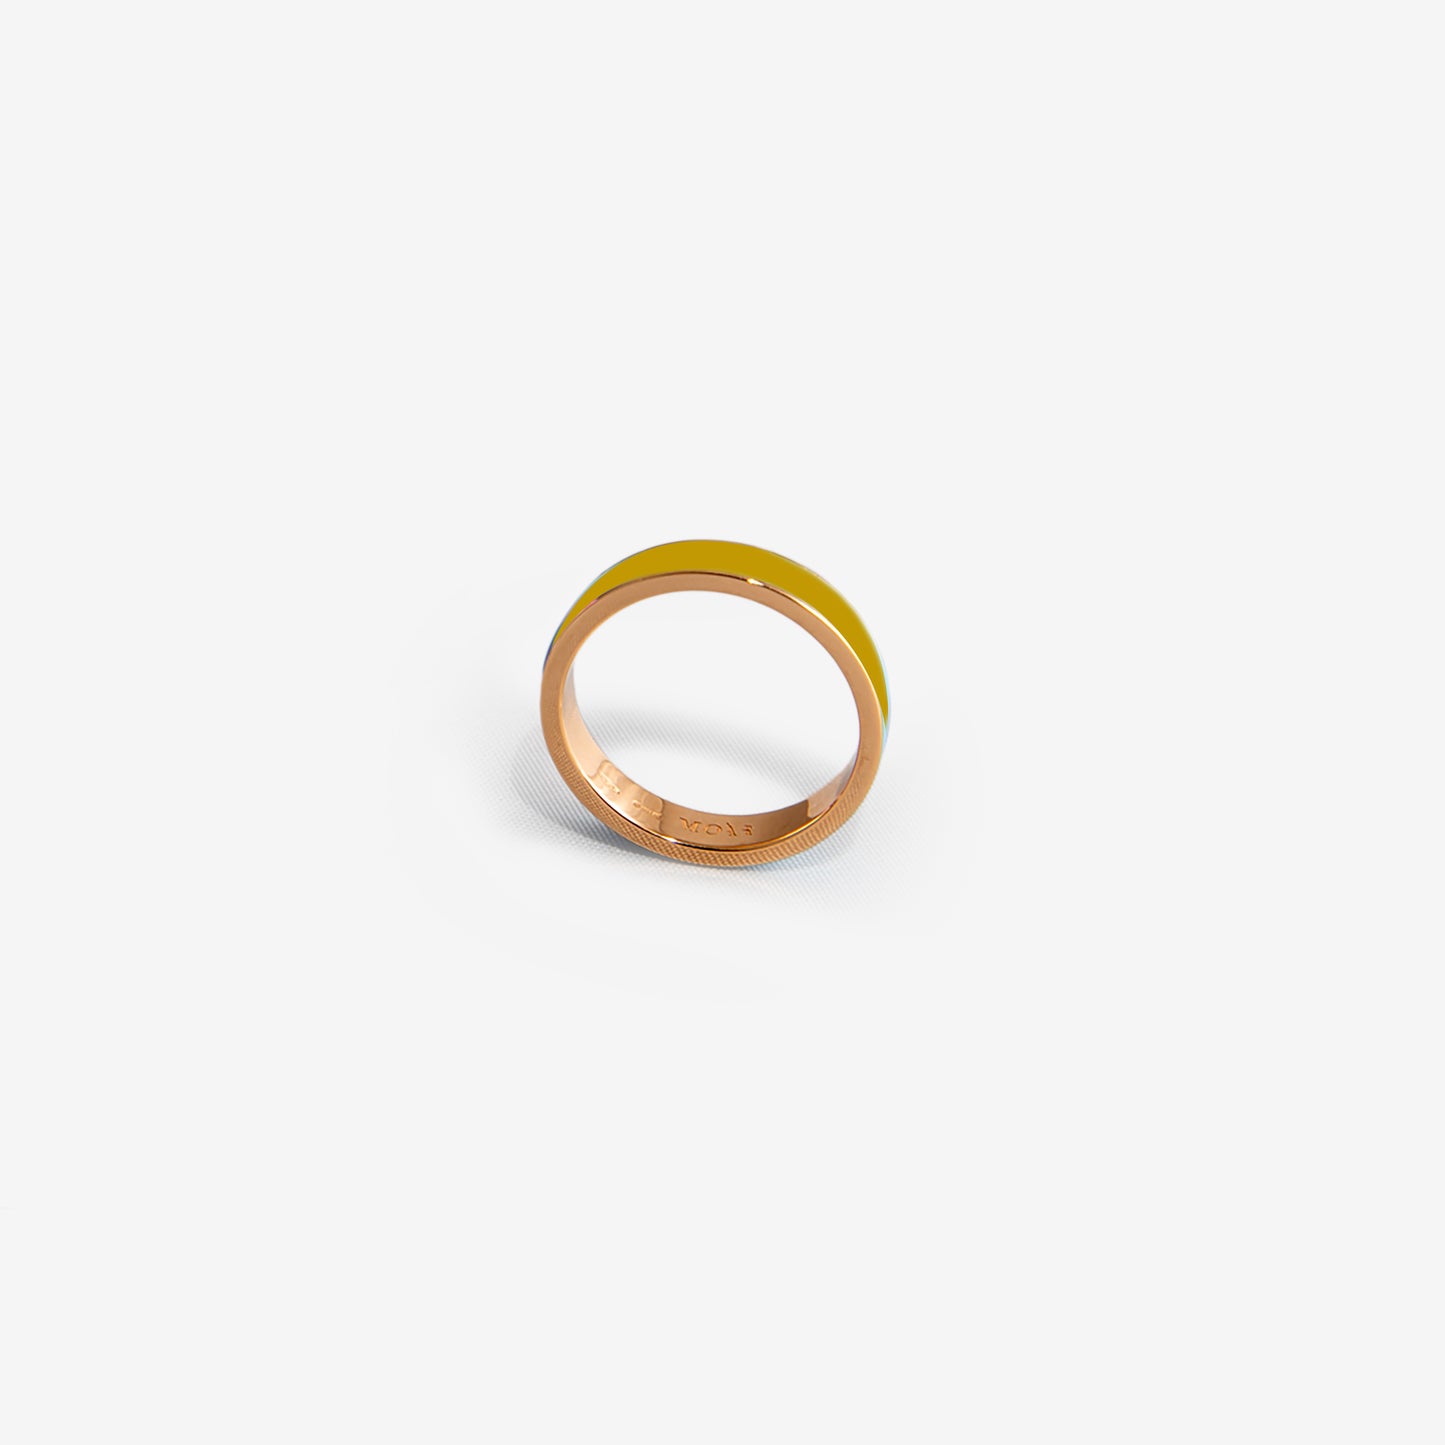 Rose gold band ring in mustard enamel